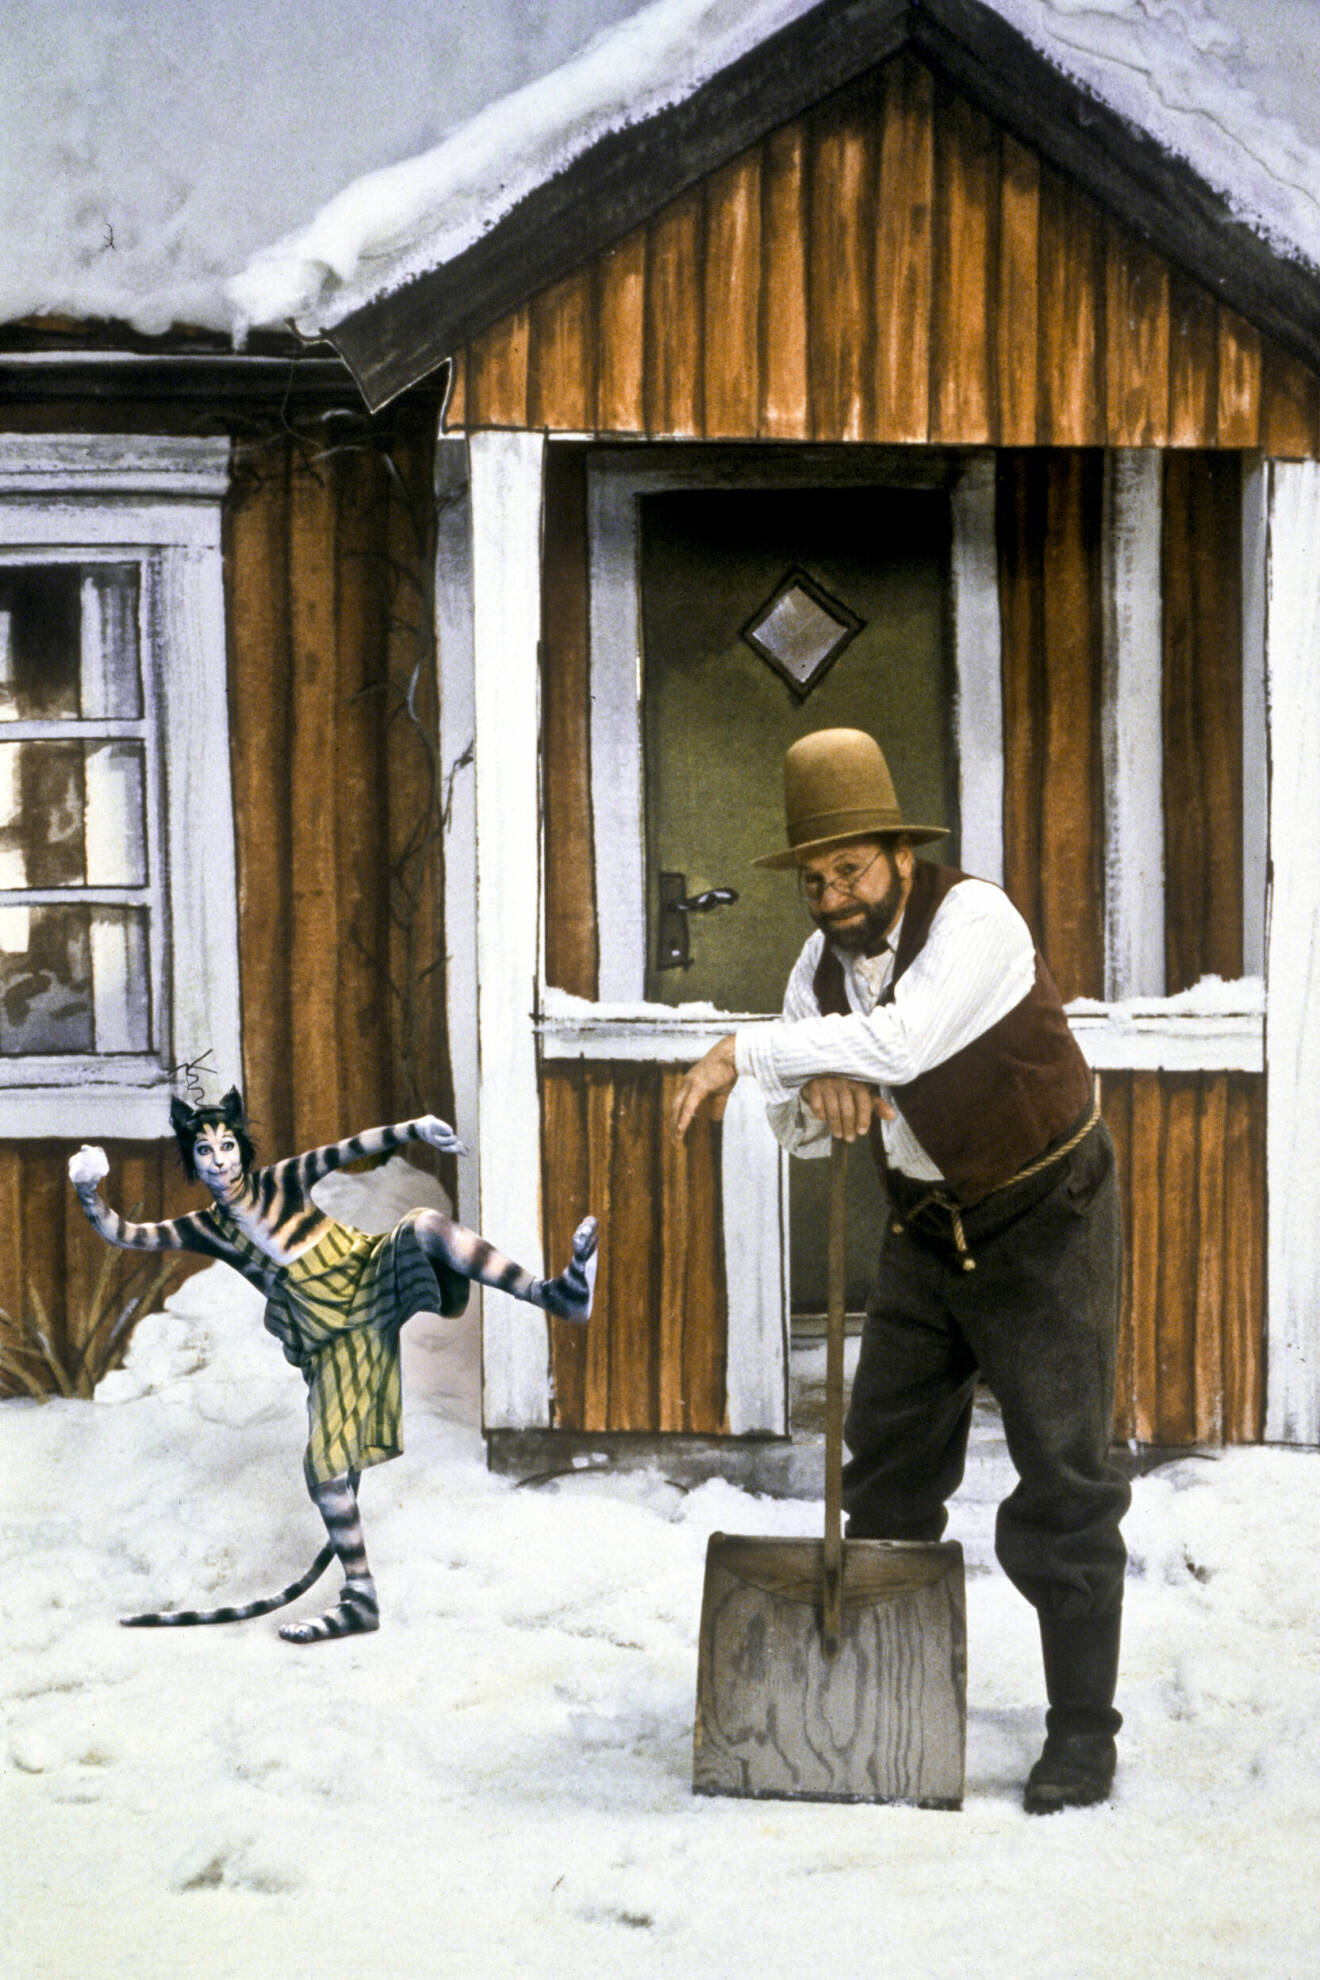 Bild på Pettson och Findus som står framför ett rött trähus i julkalendern Tomtemaskinen. Det ligger snö på taket och på marken. Findus håller i en snöboll och Pettson lutar sig på en snöskyffel.